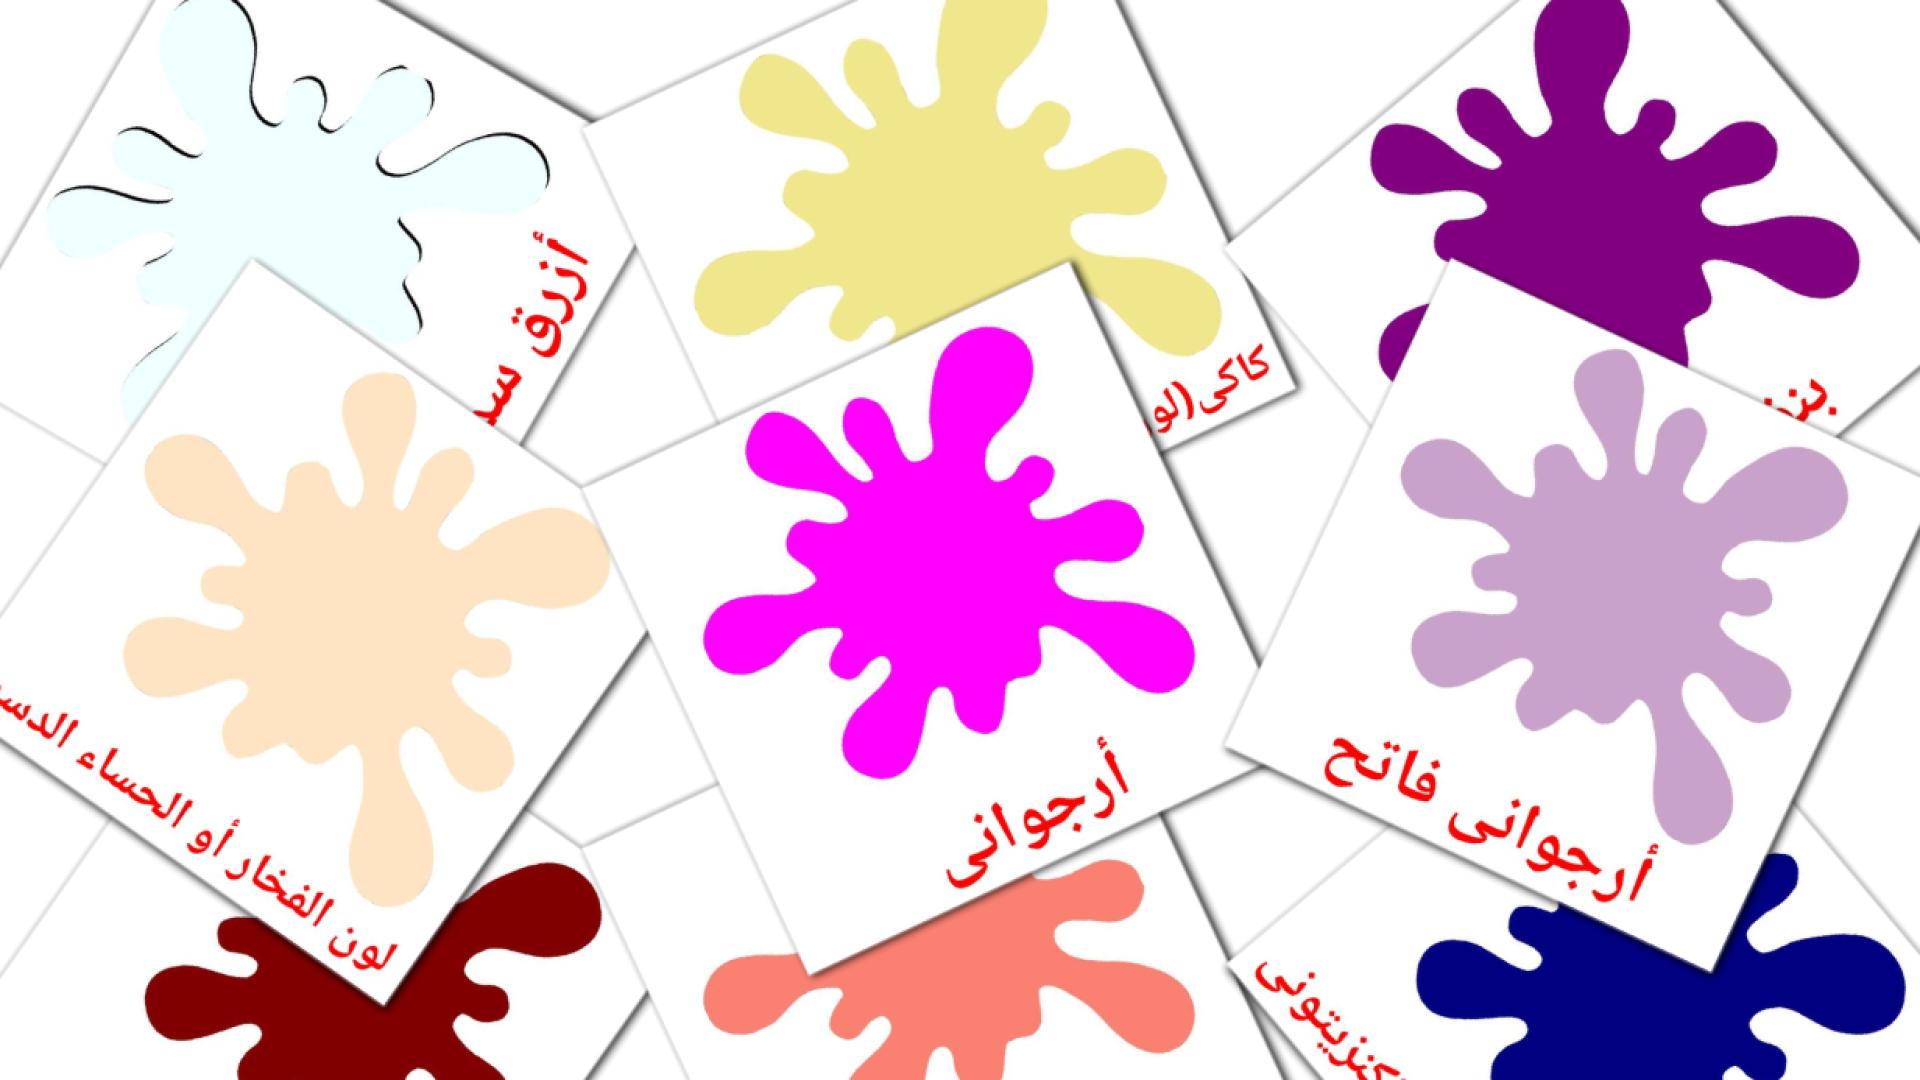 Cores secondarias - Cartões de vocabulário árabe